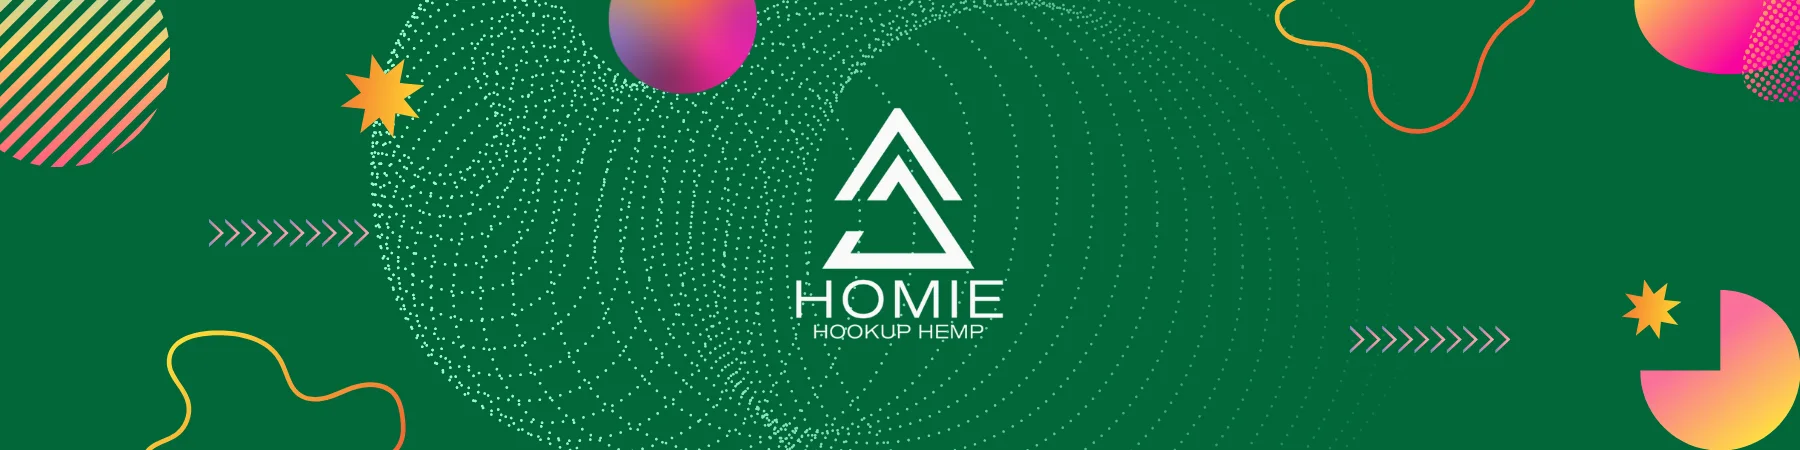 Homie Hookup Hemp